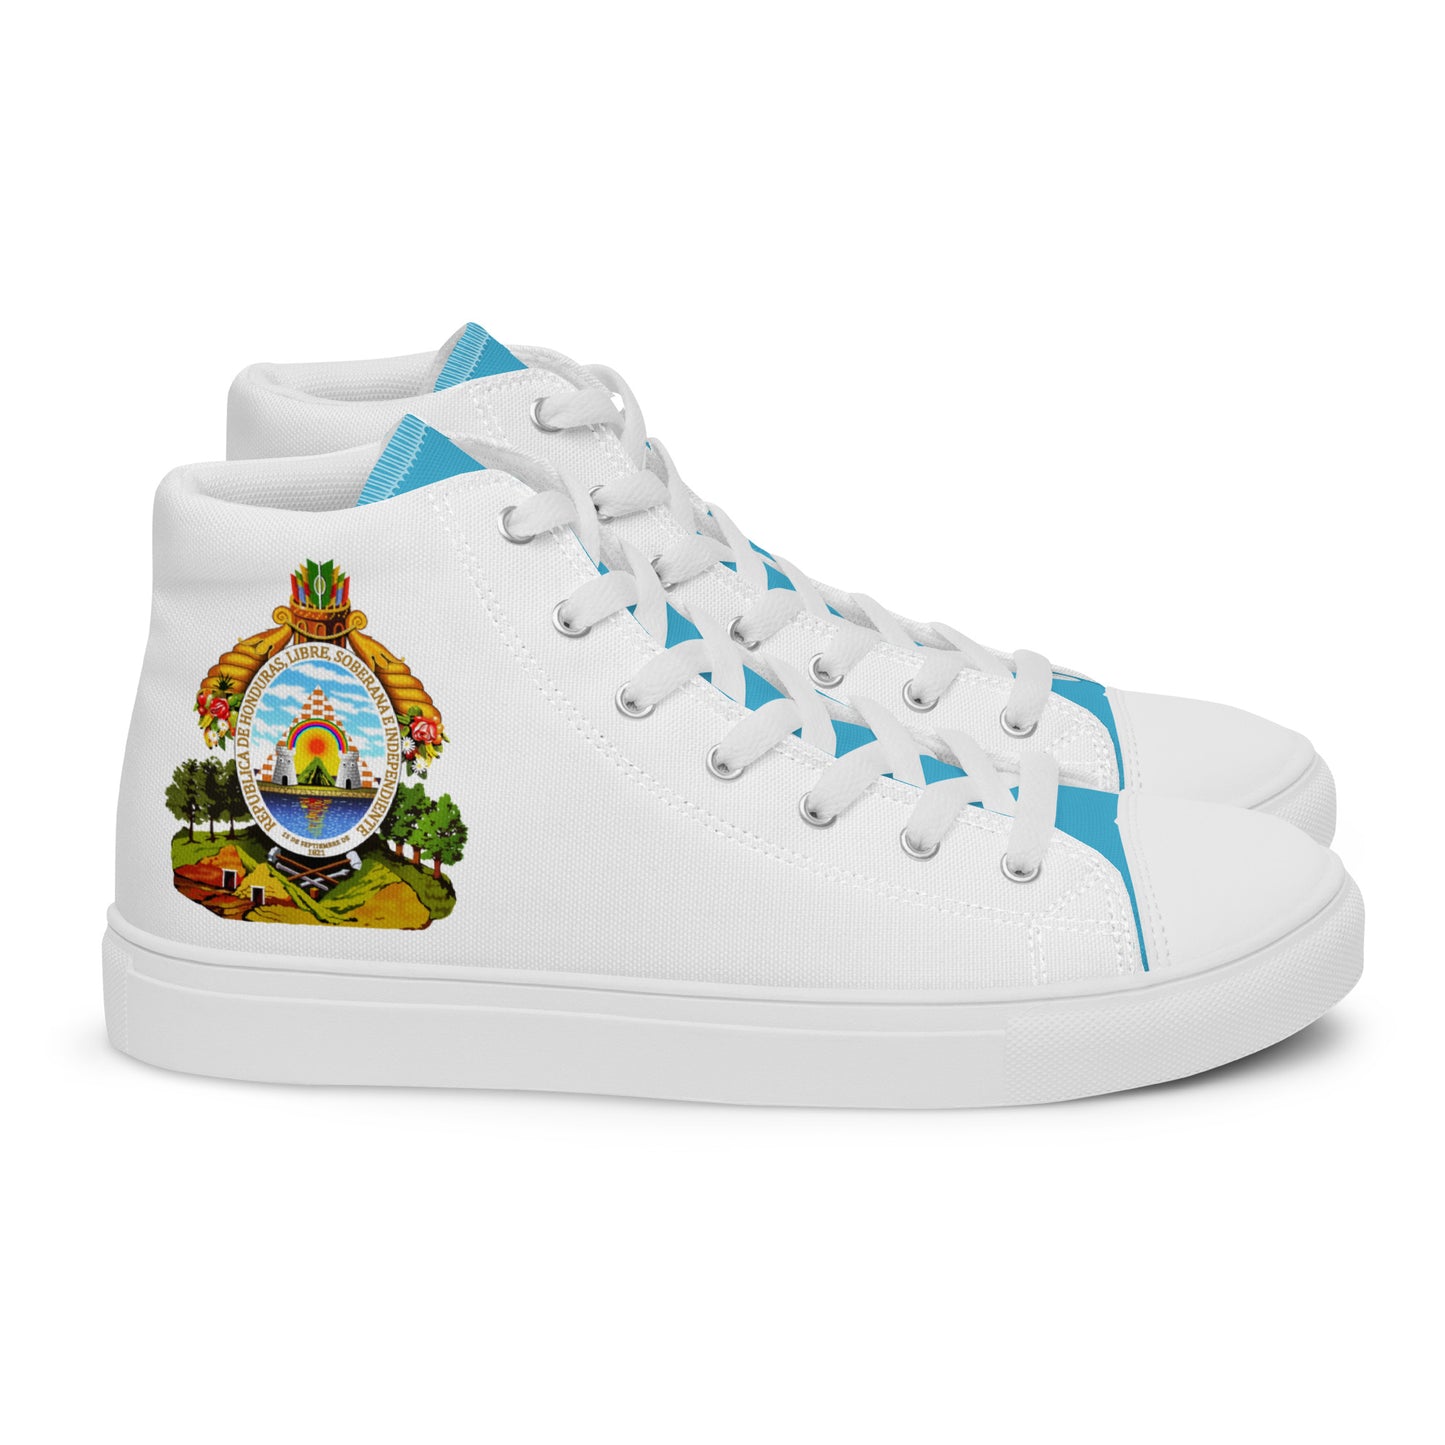 Honduras - Women - White - High top shoes